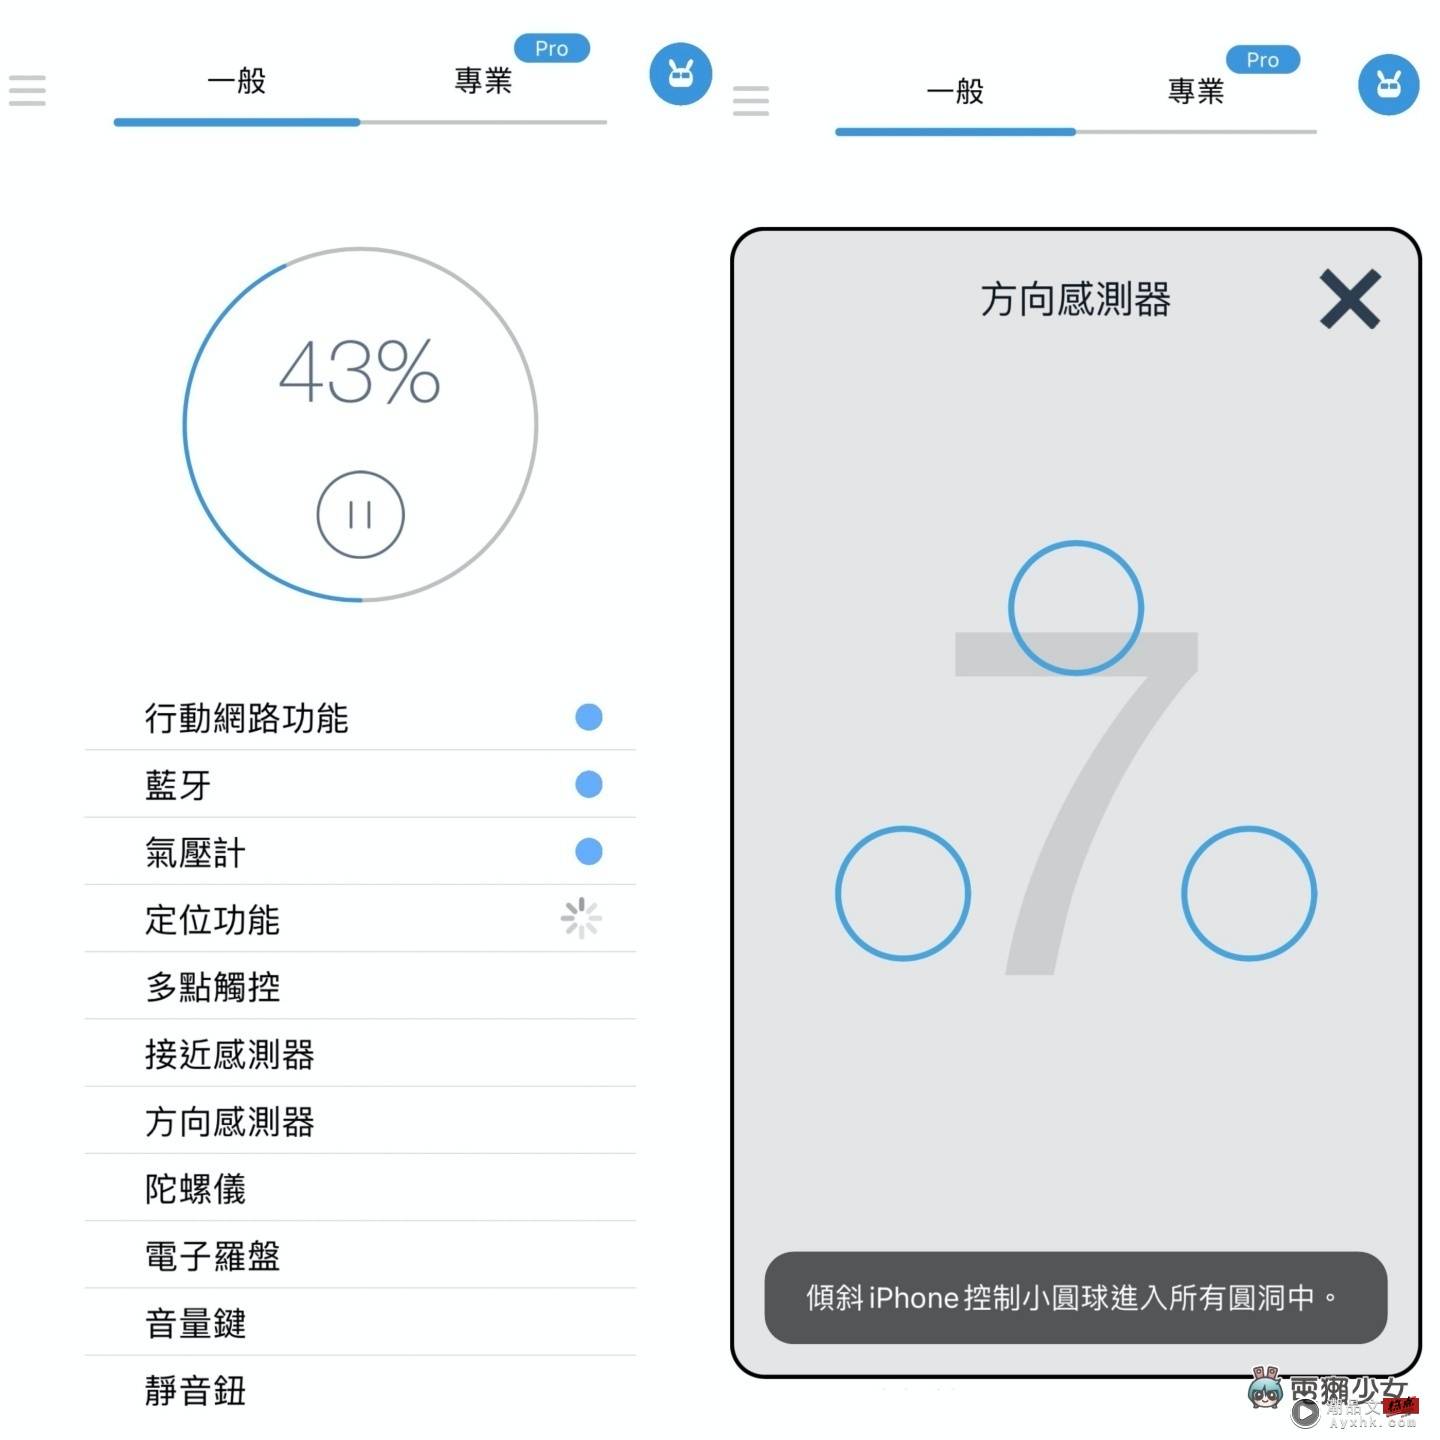 好想买 iPhone 14 Pro 但钱钱不够！靠卖旧机补贴怎样最划算？ 中国台湾二手通路回收价，‘ 手机医生 ’帮你一次比清楚！（Android／iOS） 数码科技 图4张